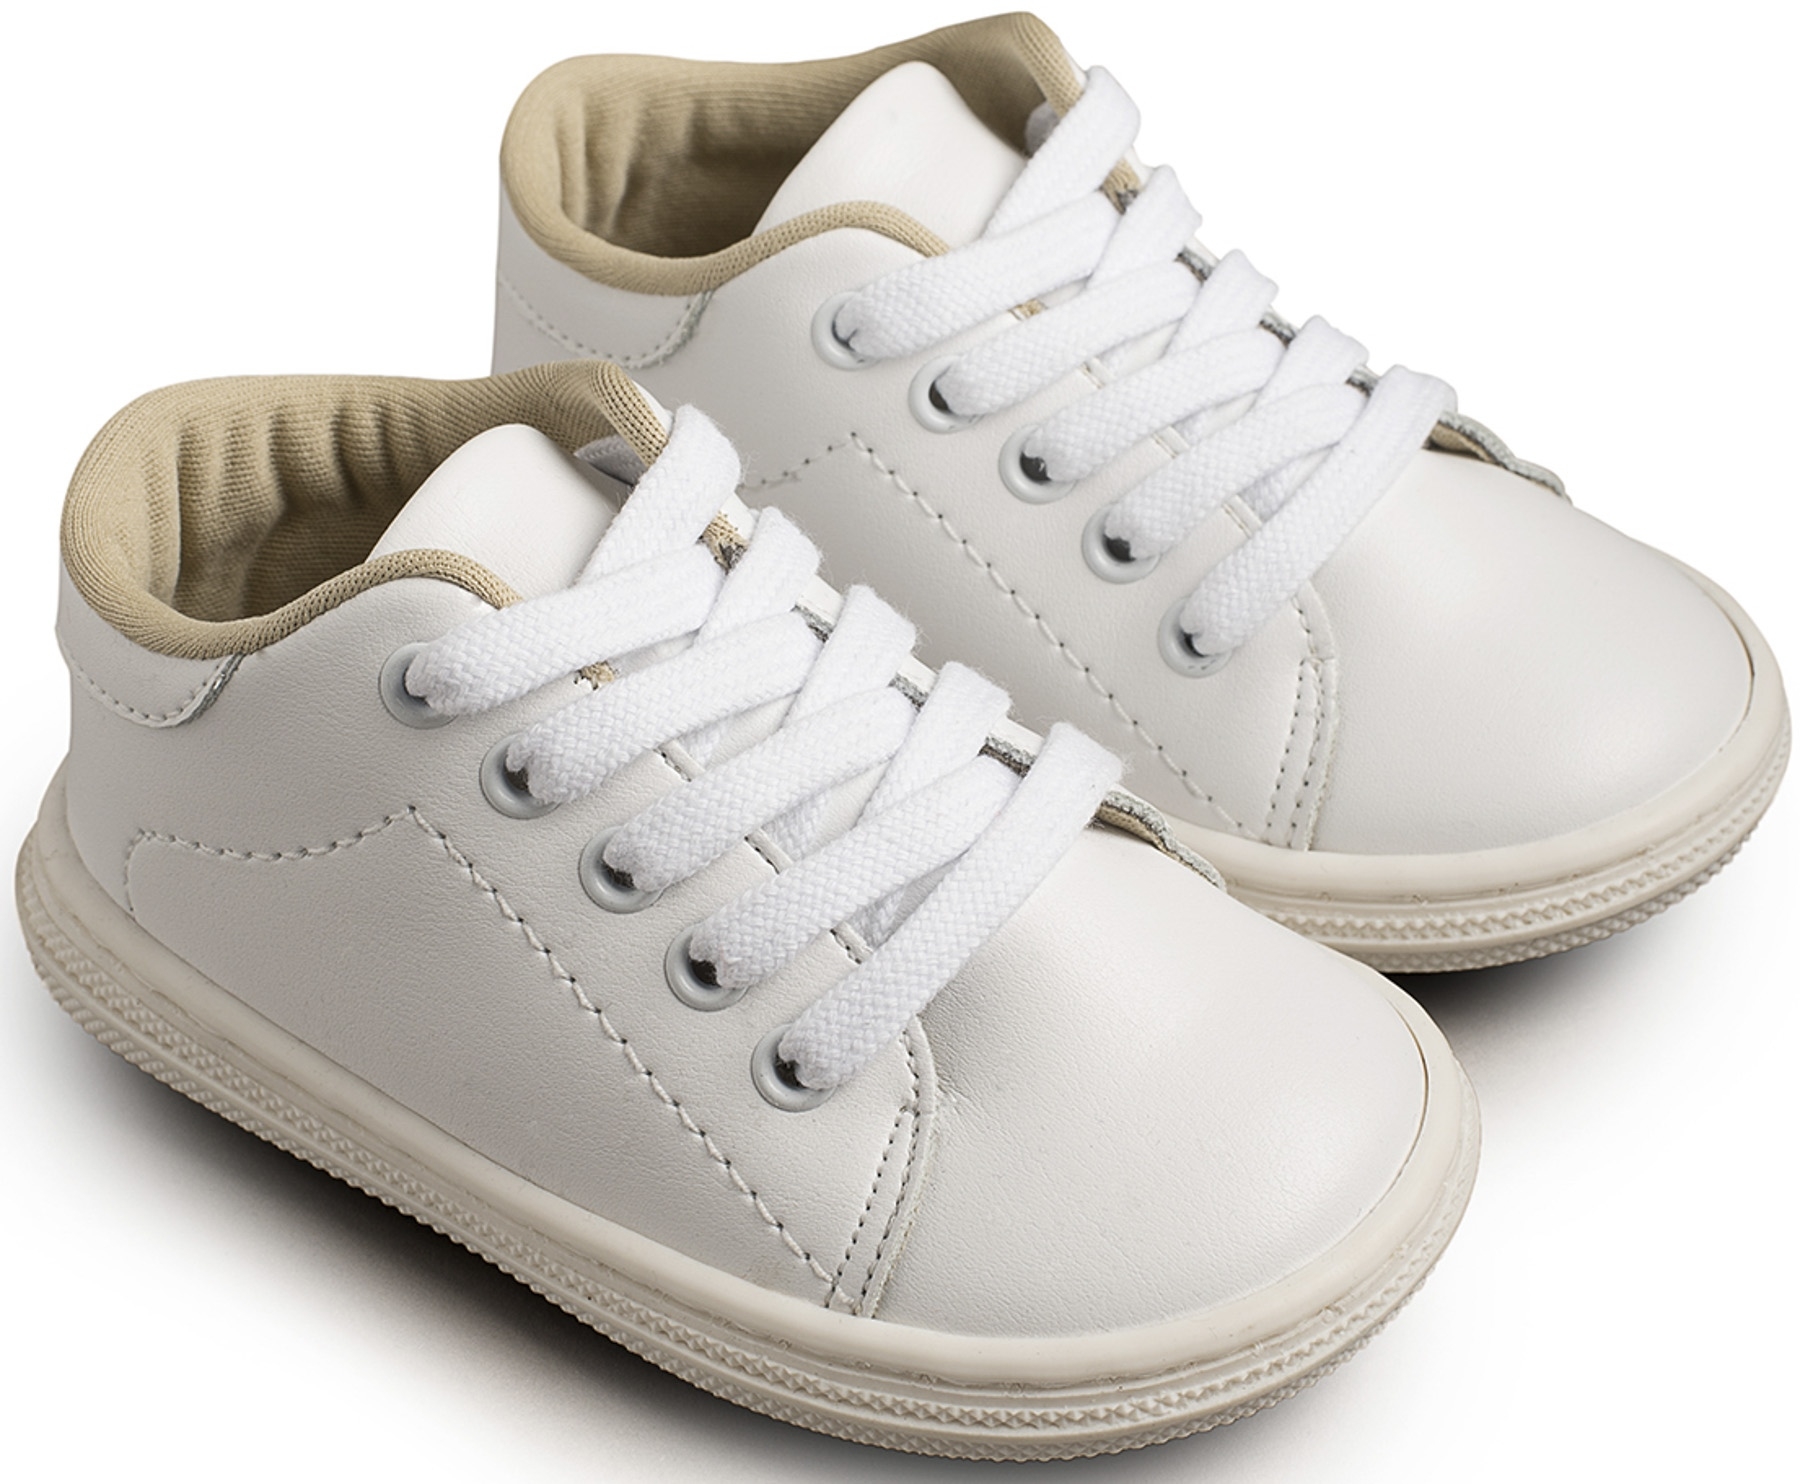 3030 βαπτιστικό παπούτσι για αγόρι αθλητικό με κορδόνια άσπρο babywalker : 1